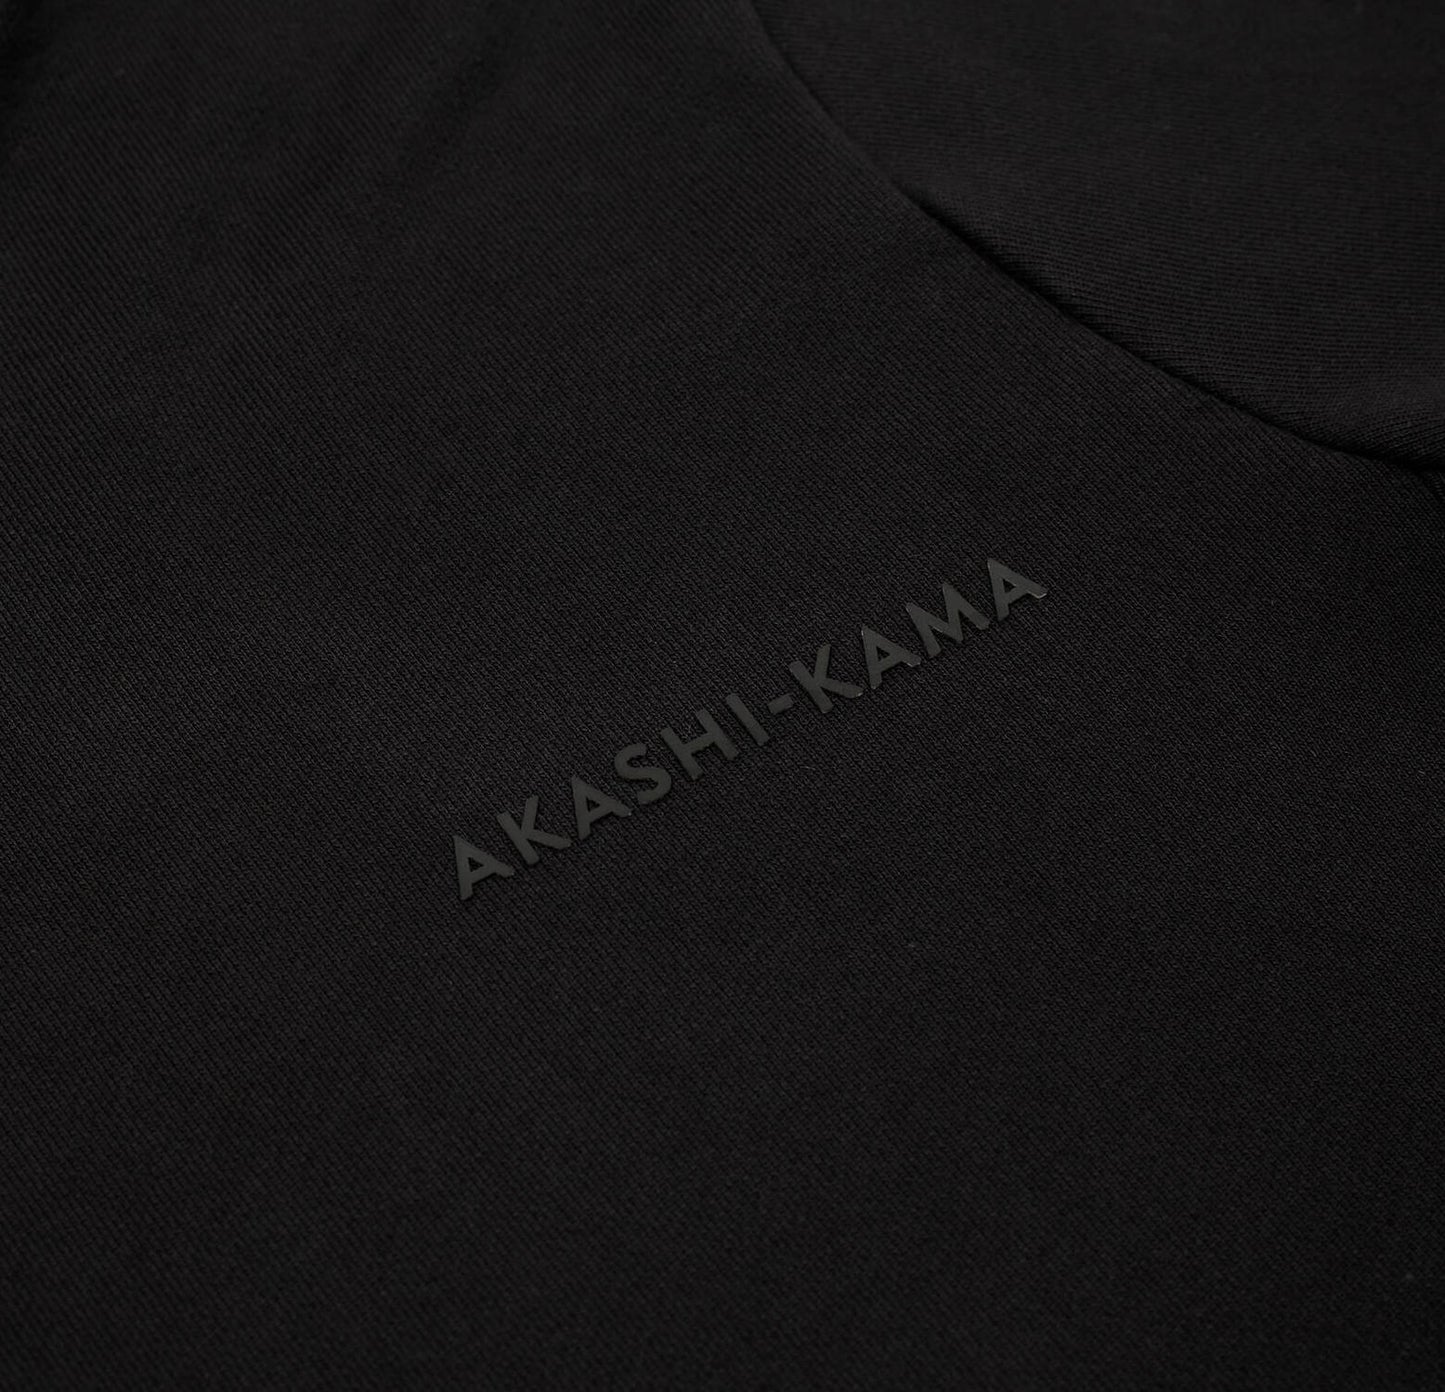 Stamped Logo AKASHI-KAMA Tee in Black Streetwear Garment Dye Shirt Silicone Print